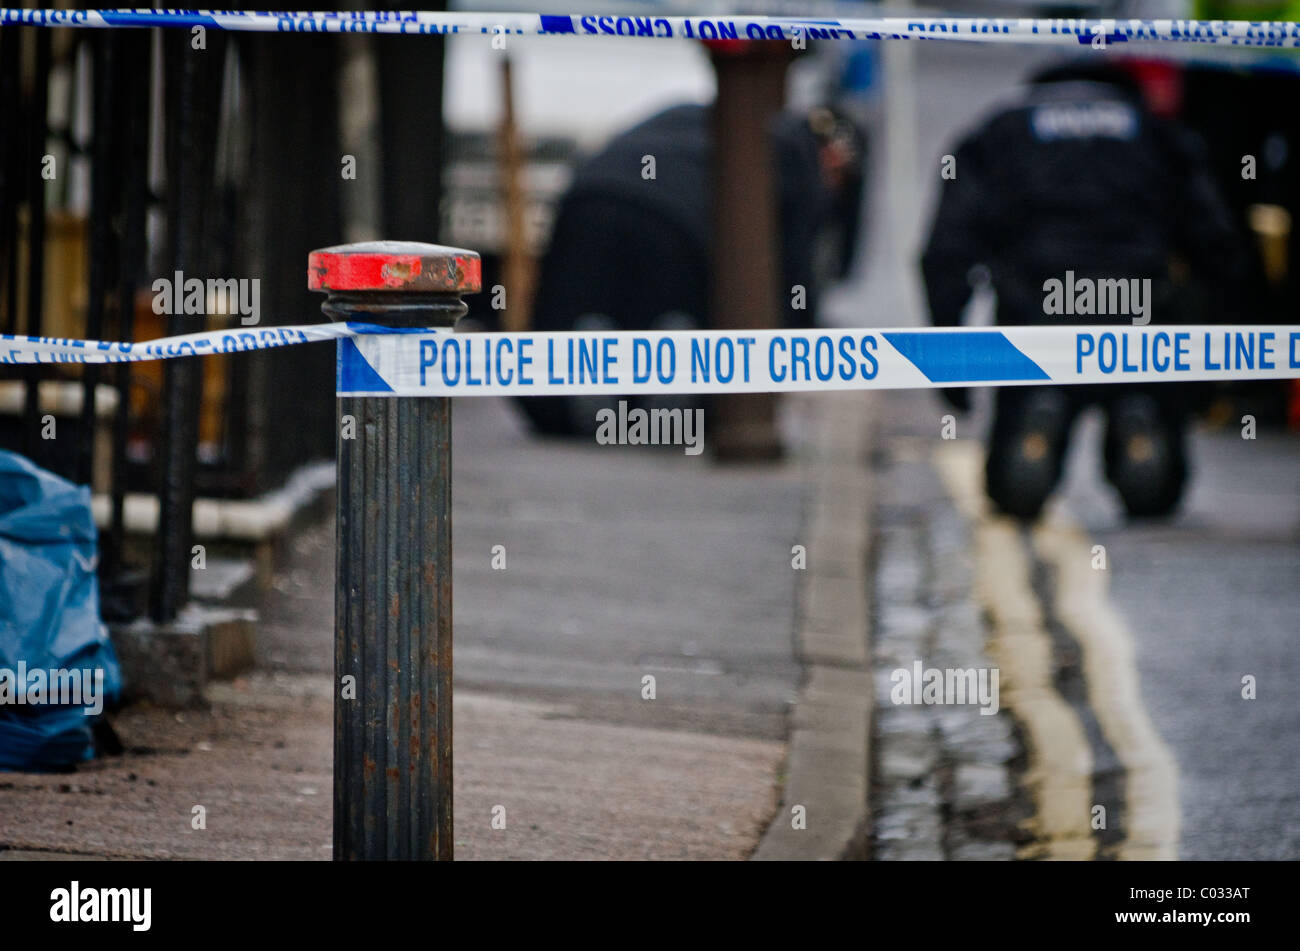 Polizei untersucht den Tatort, wo Polizei einen Verdächtigen erschossen Stockfoto